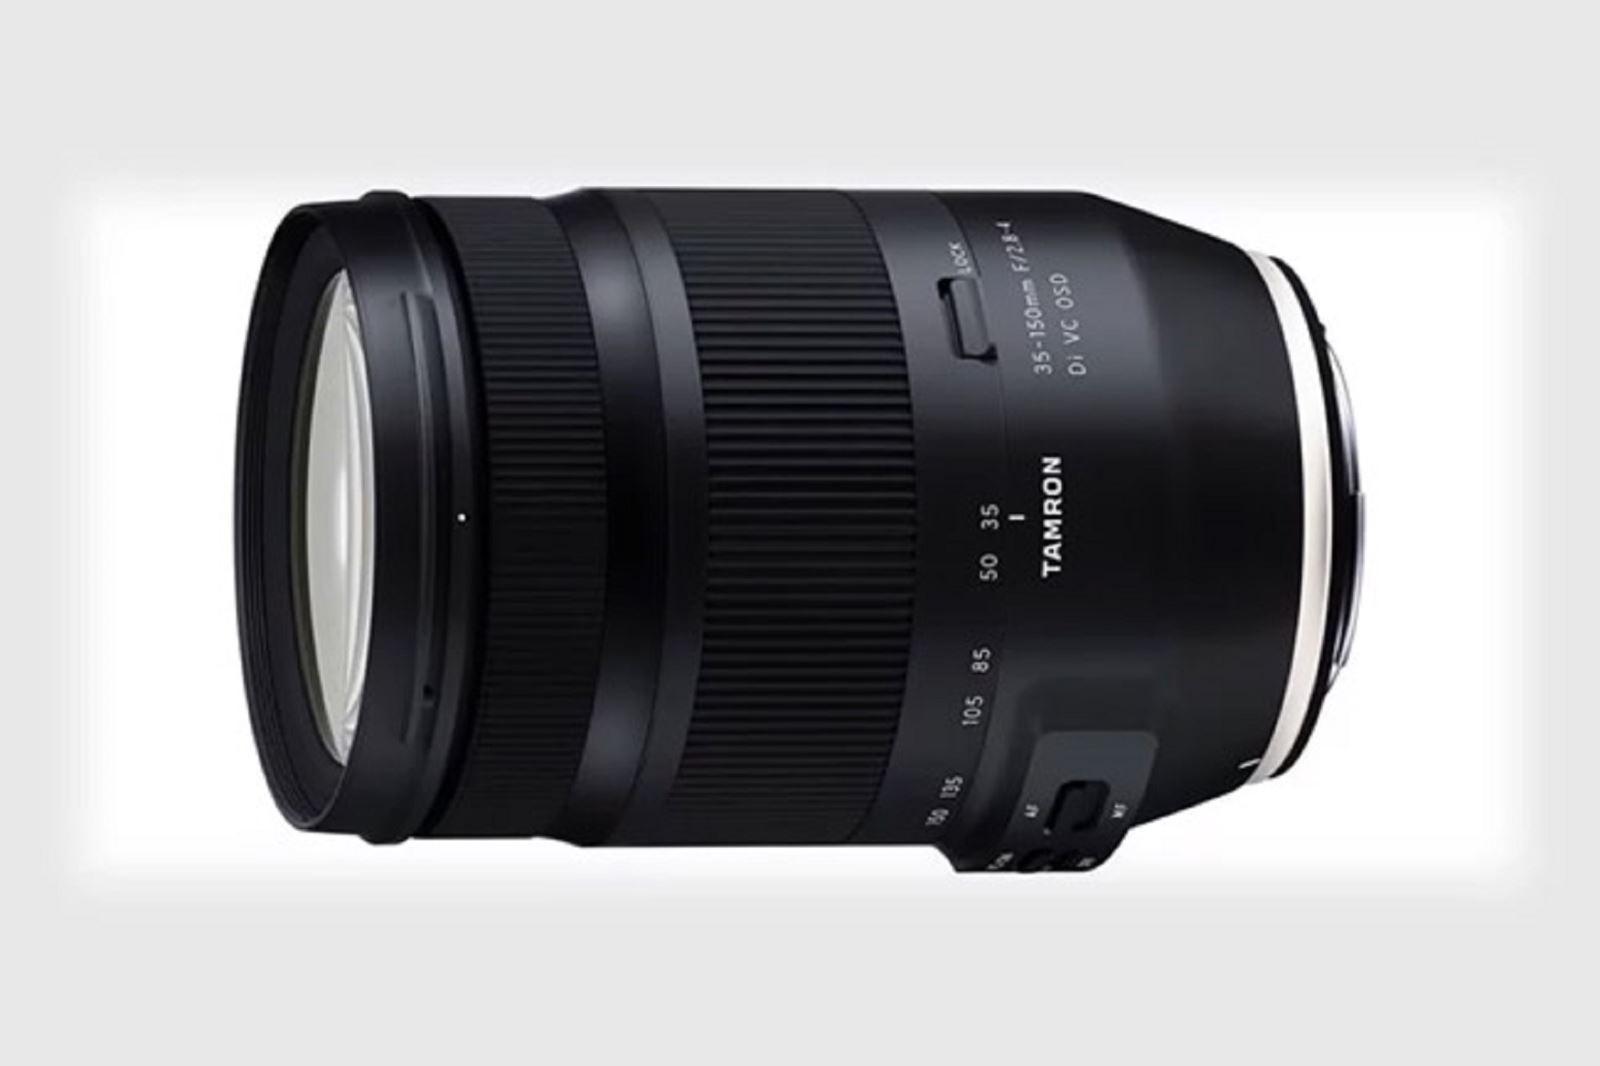 Tamron ra mắt ống kính 35-150mm f2.8-4 cho máy ảnh DSLR Fullframe Canon và Nikon